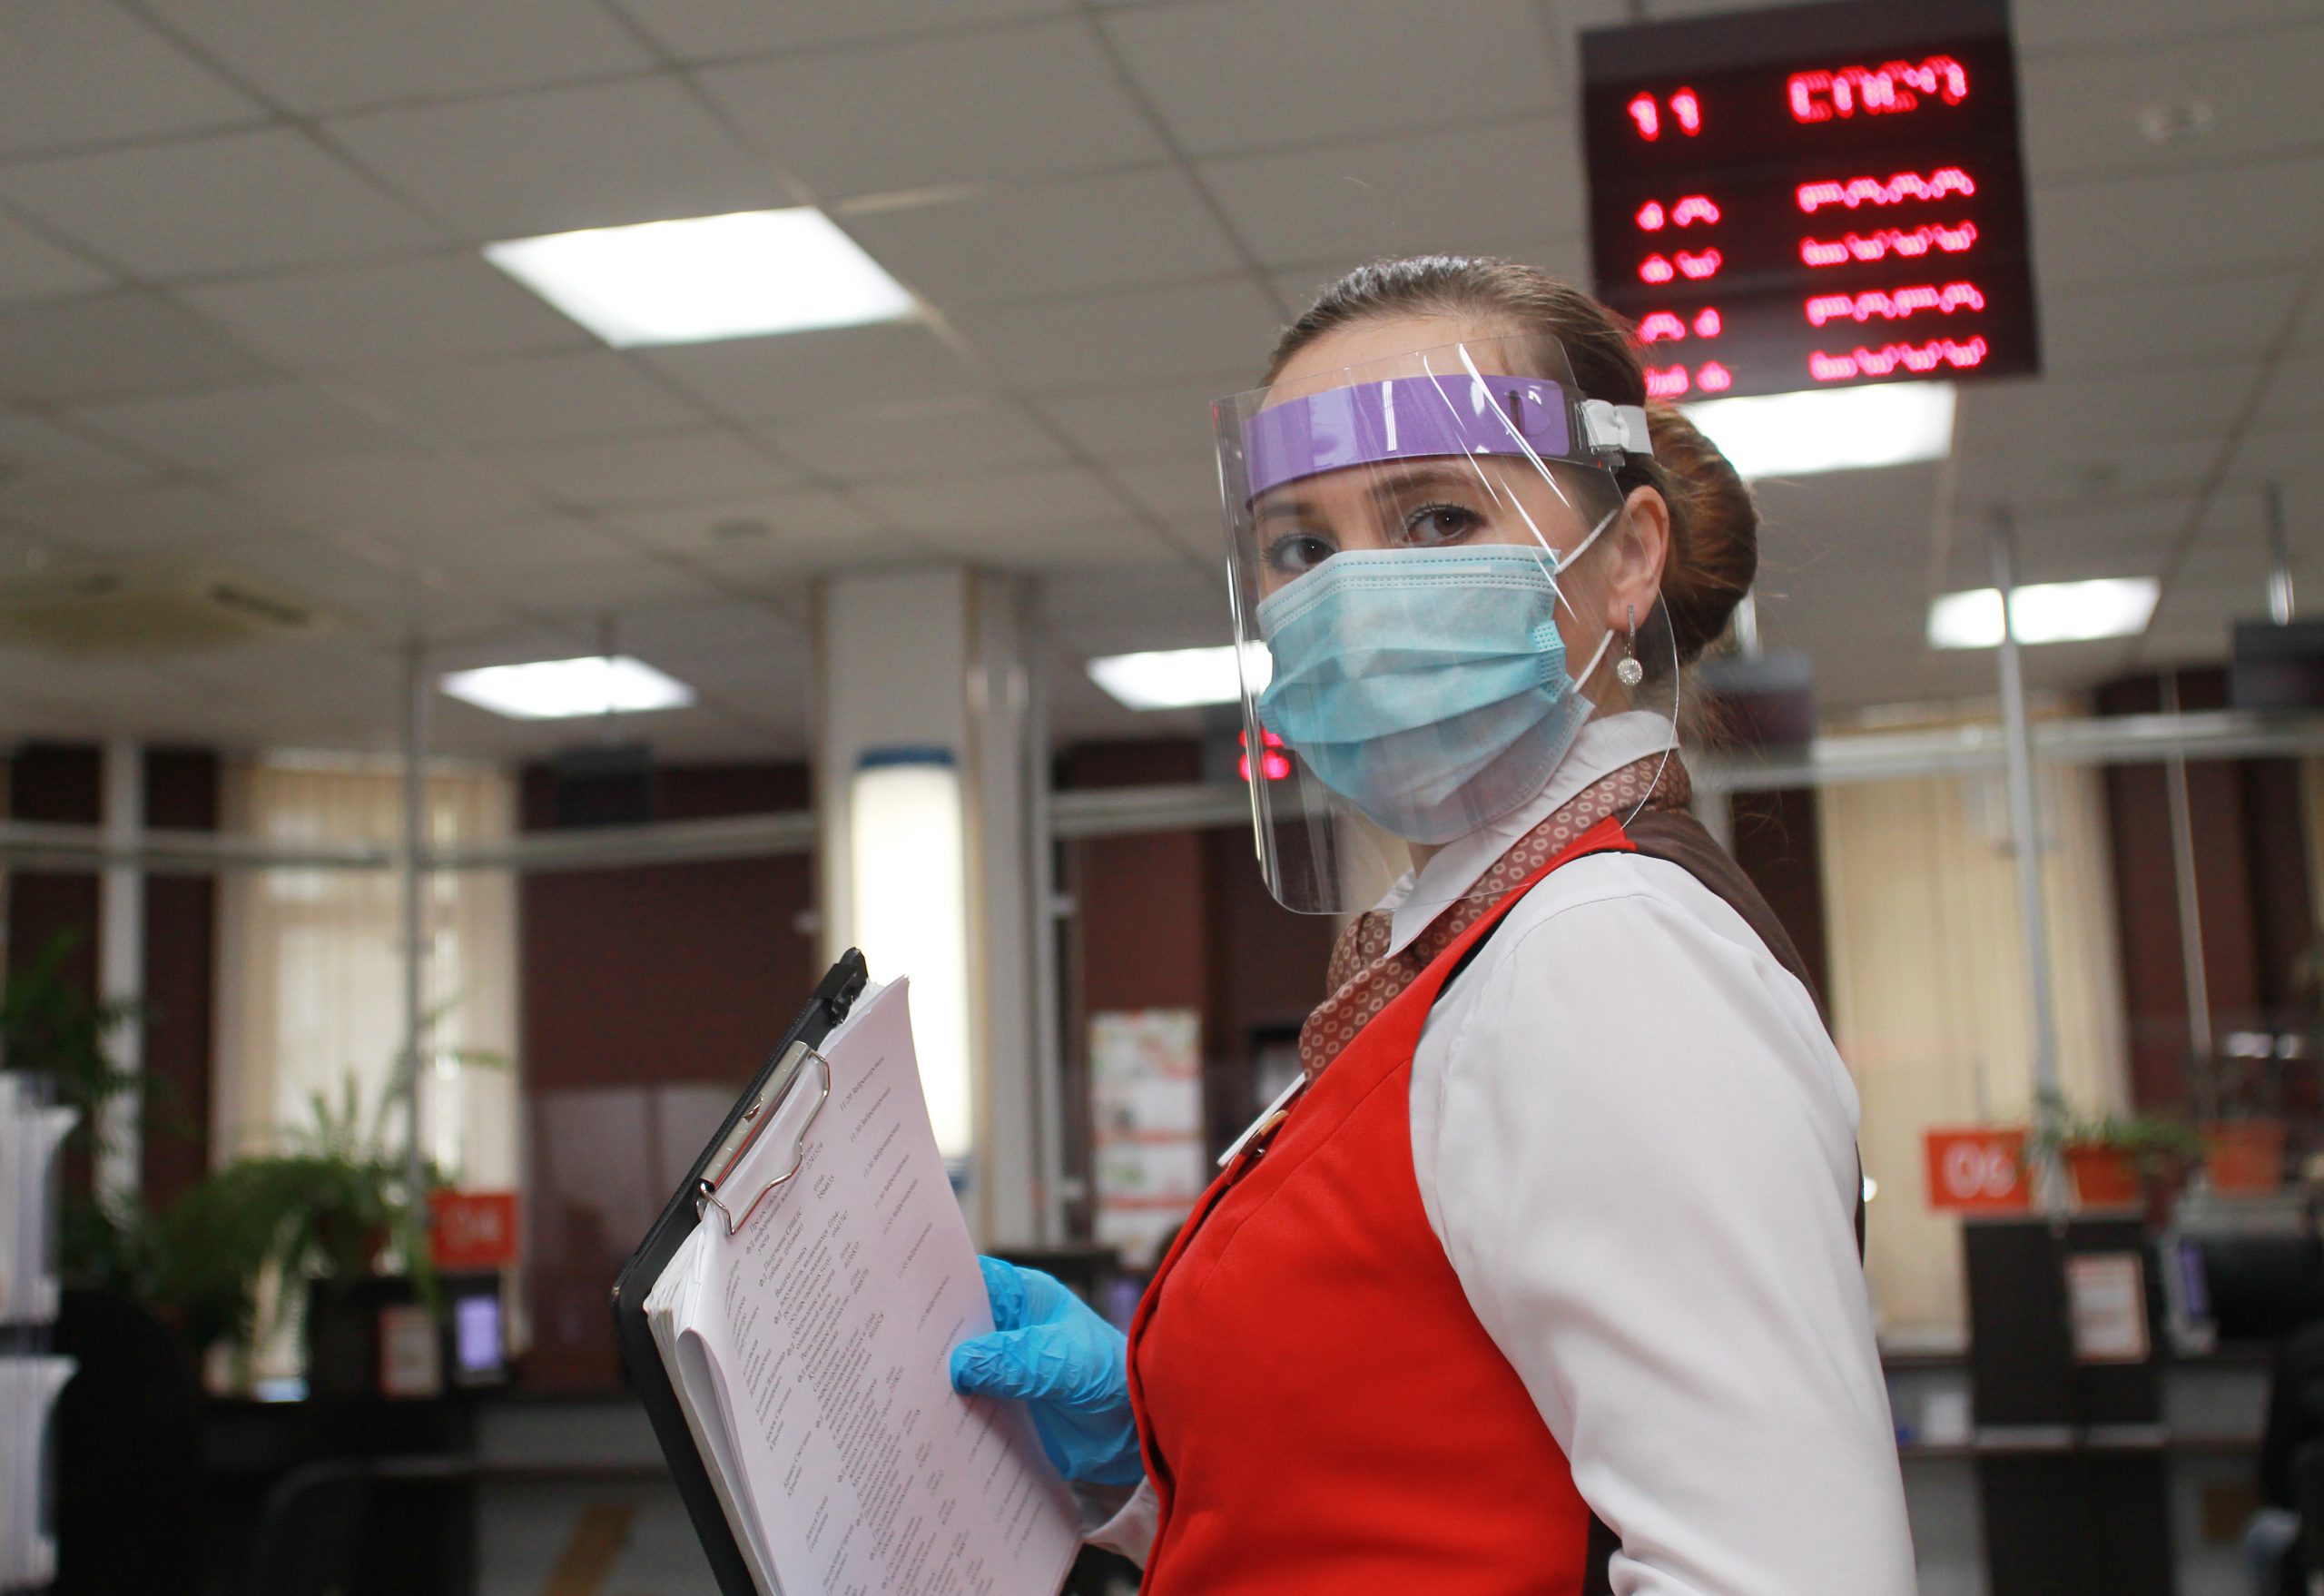 Работу сердца можно проверить в офисах госуслуг. Фото: Наталия Нечаева, «Вечерняя Москва»